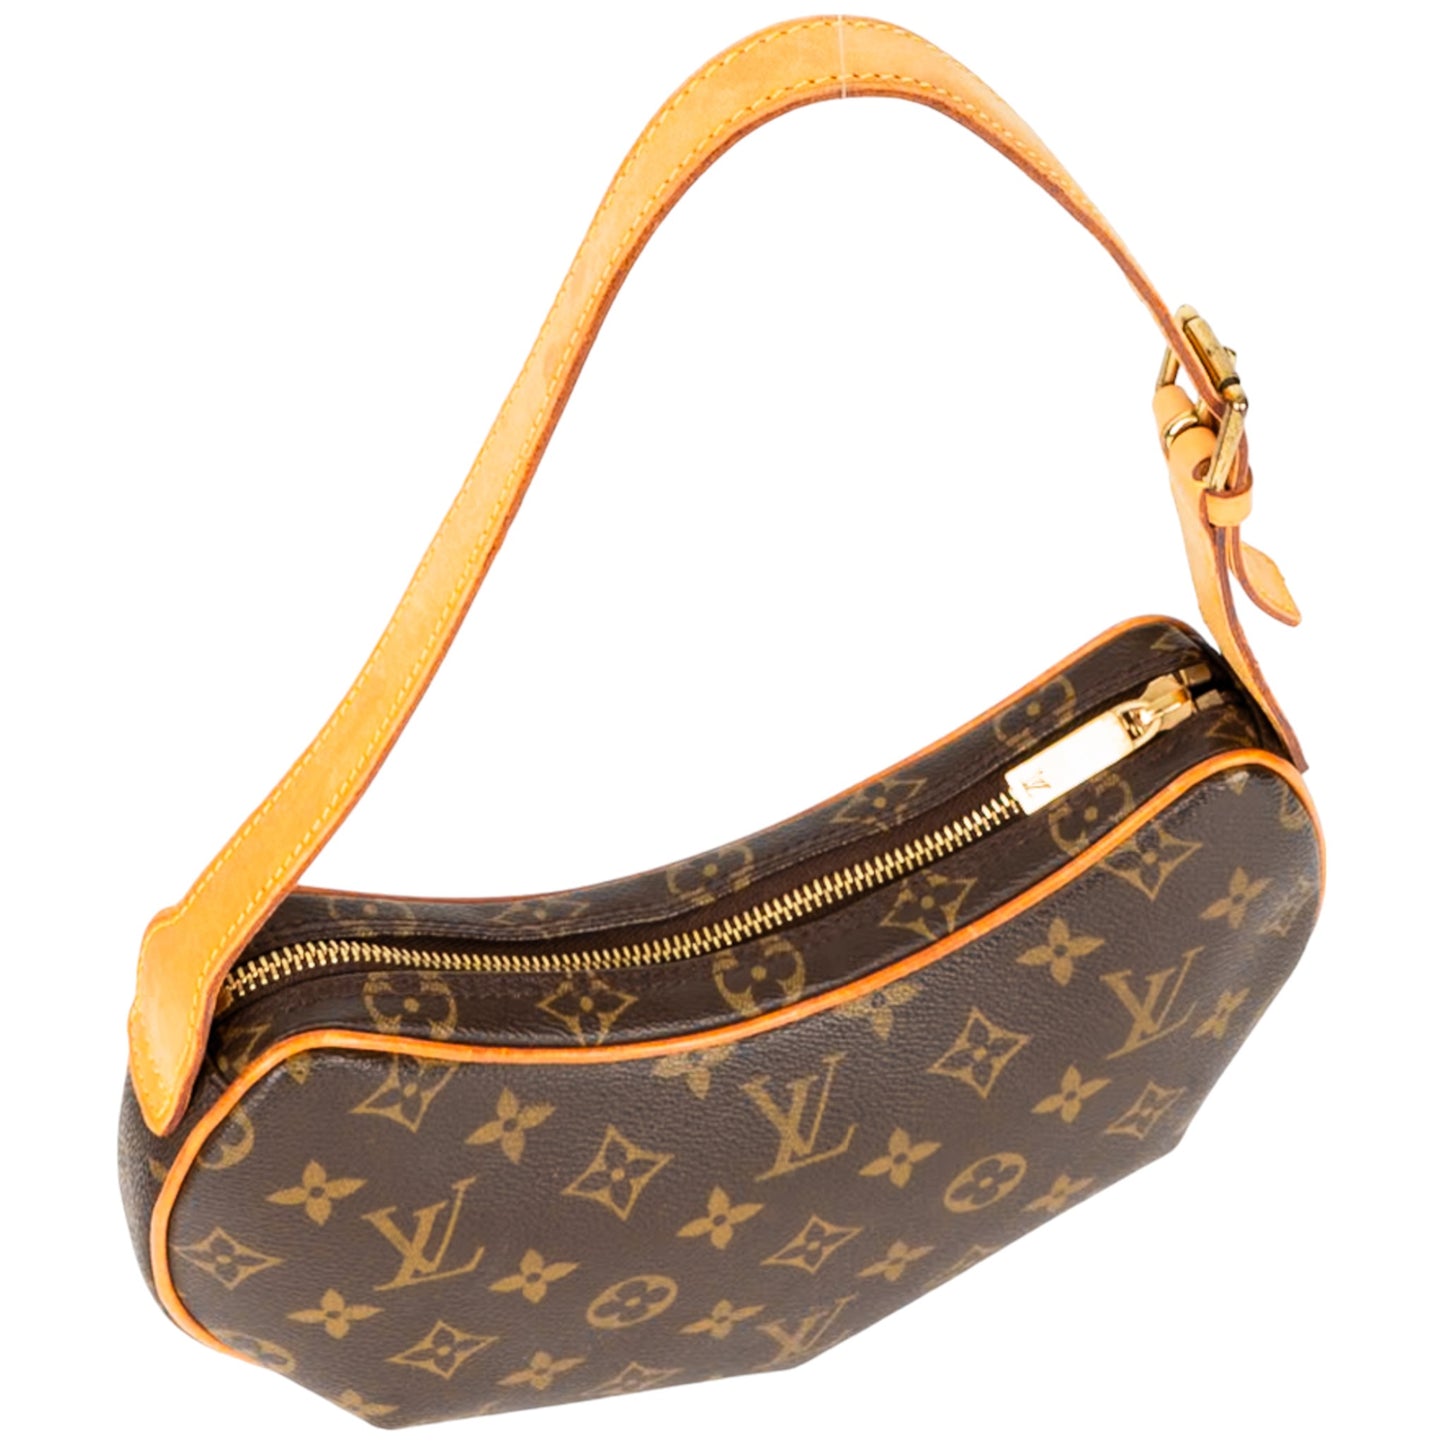 Louis Vuitton Canvas Monogram Croissant PM Handbag